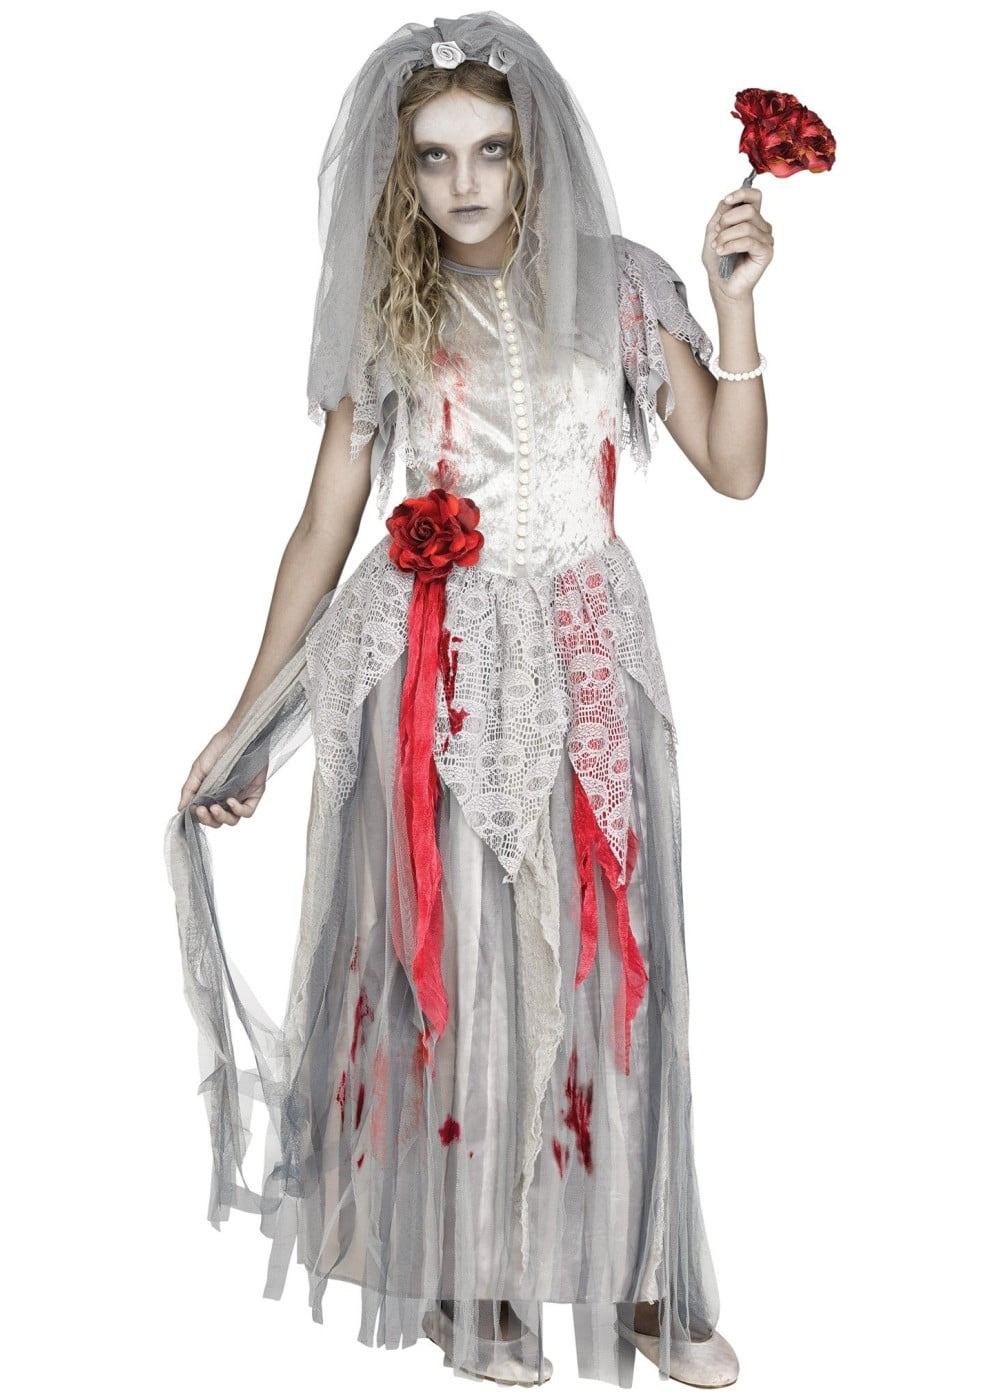 Zombie Bride Halloween Costume - Walmart.com - Walmart.com